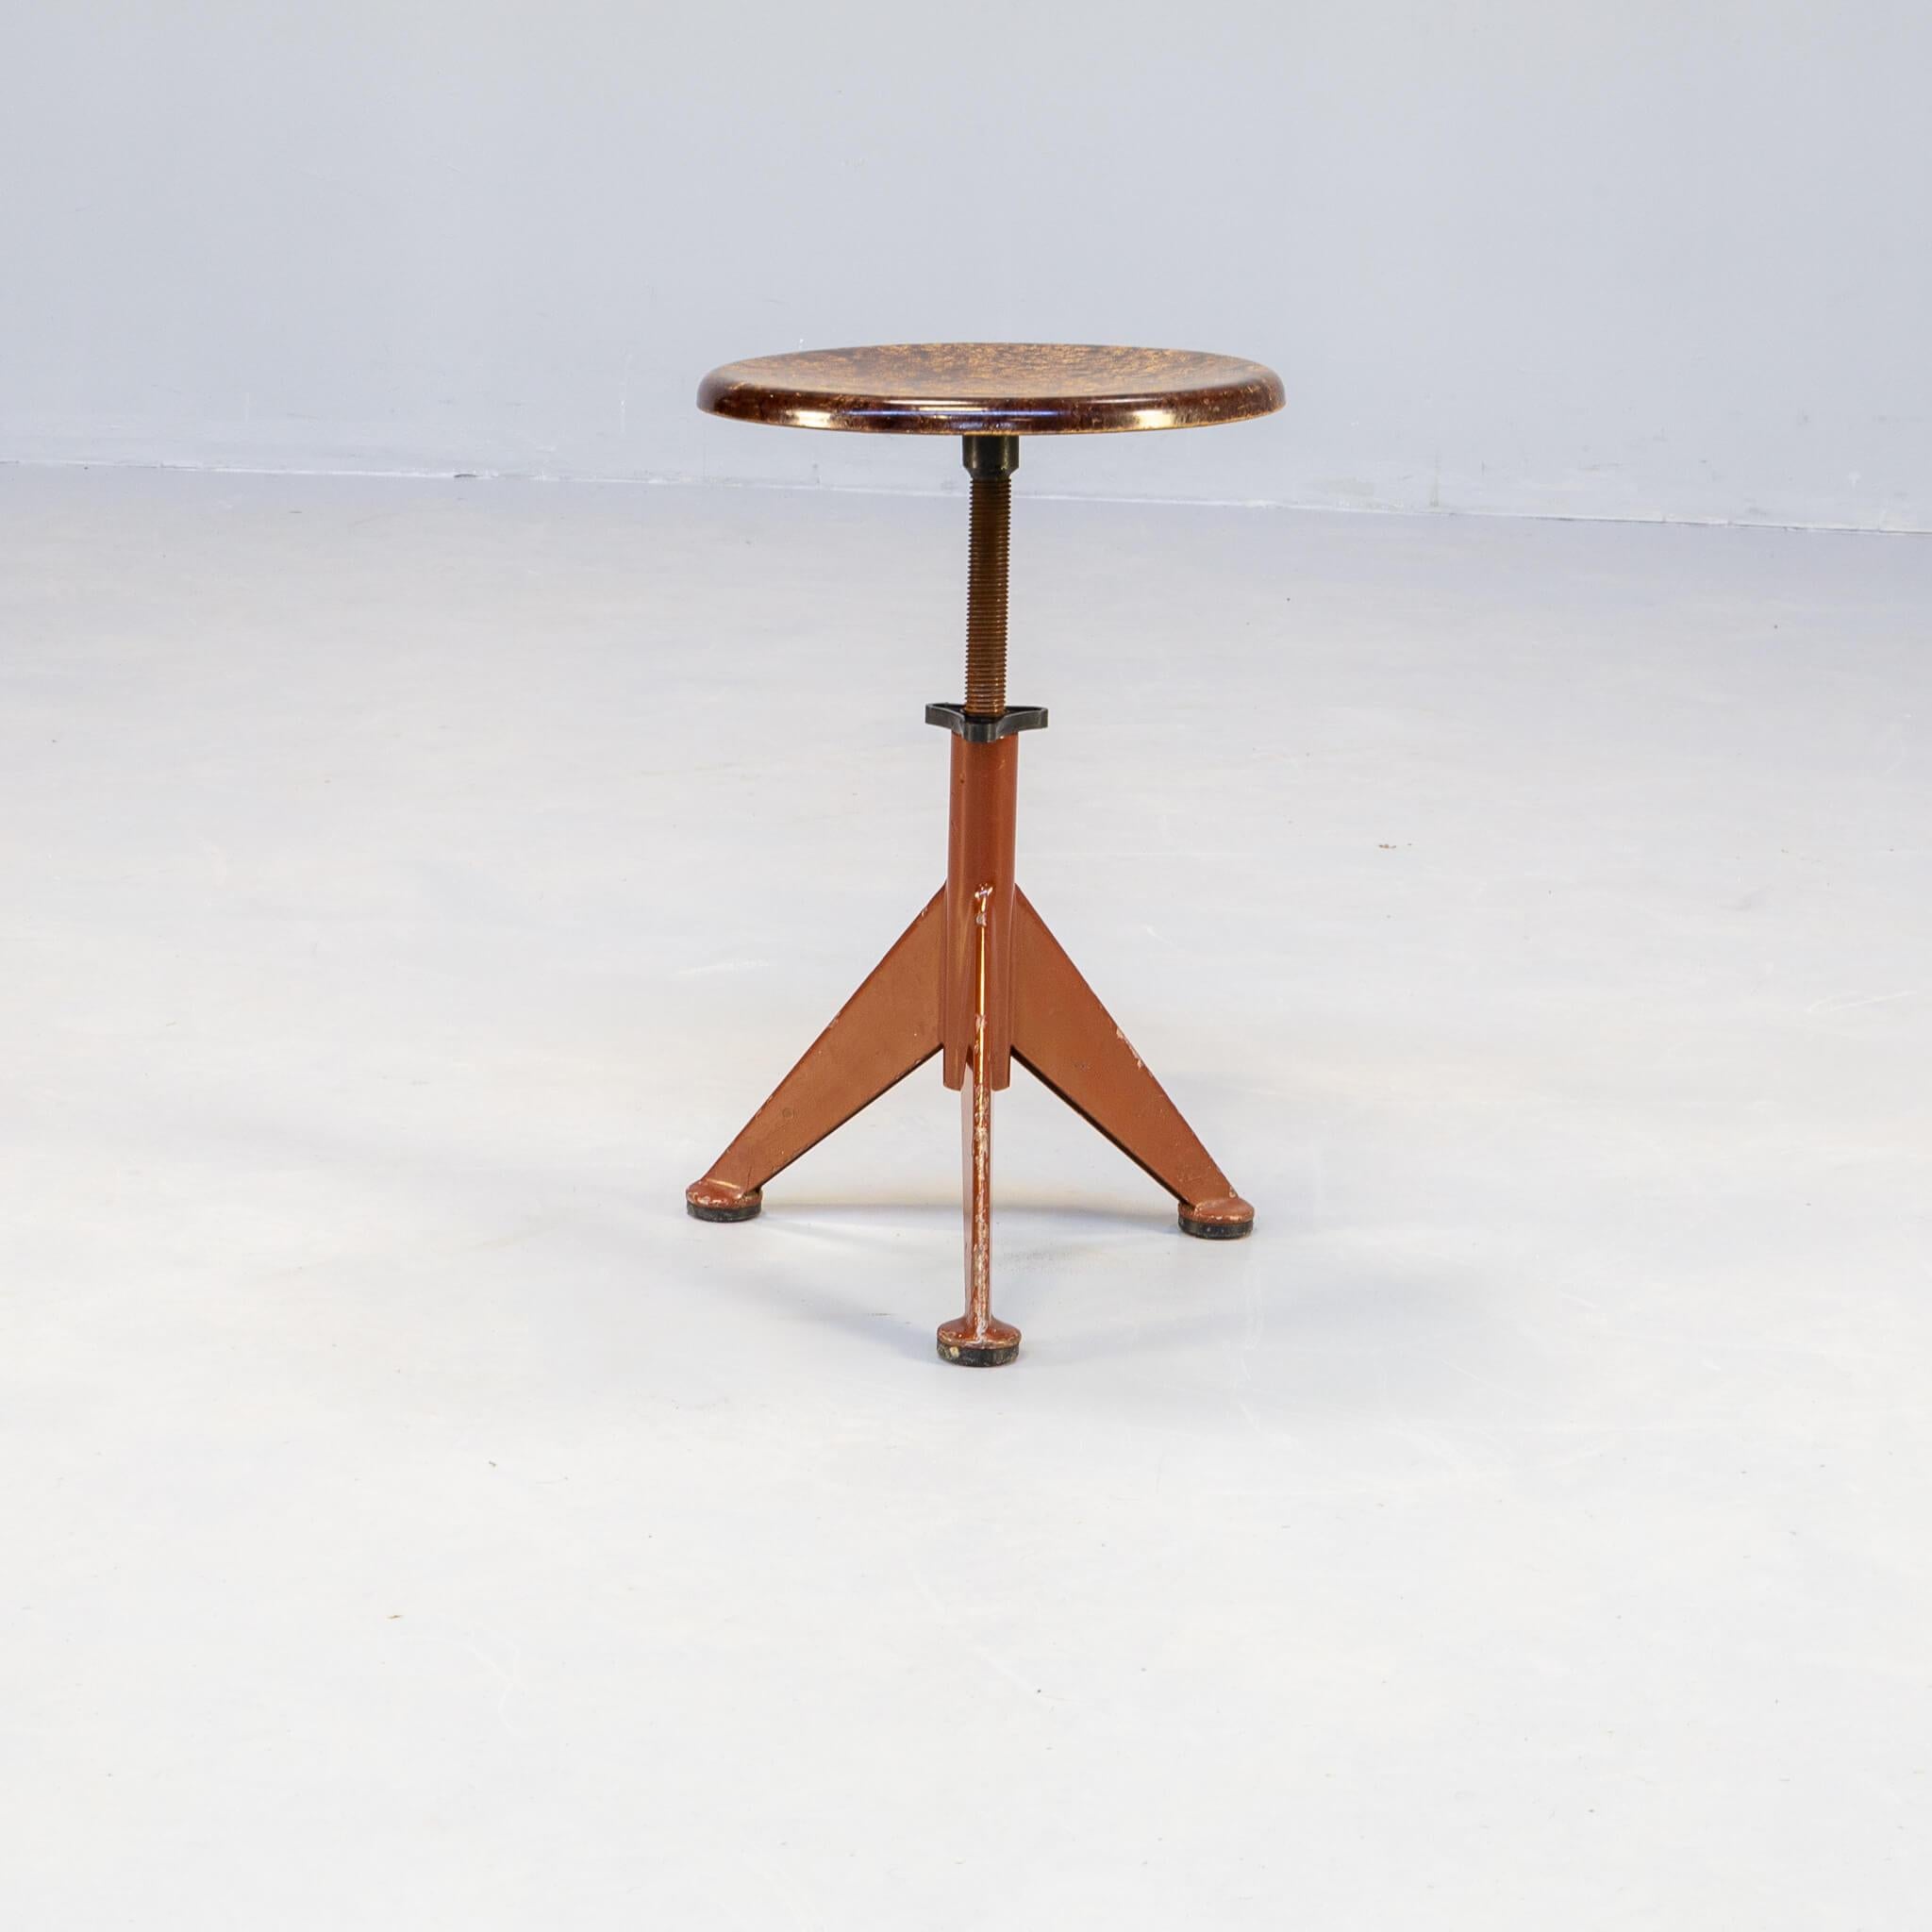 Industrial Workshop stool by AB Odelberg-Olson